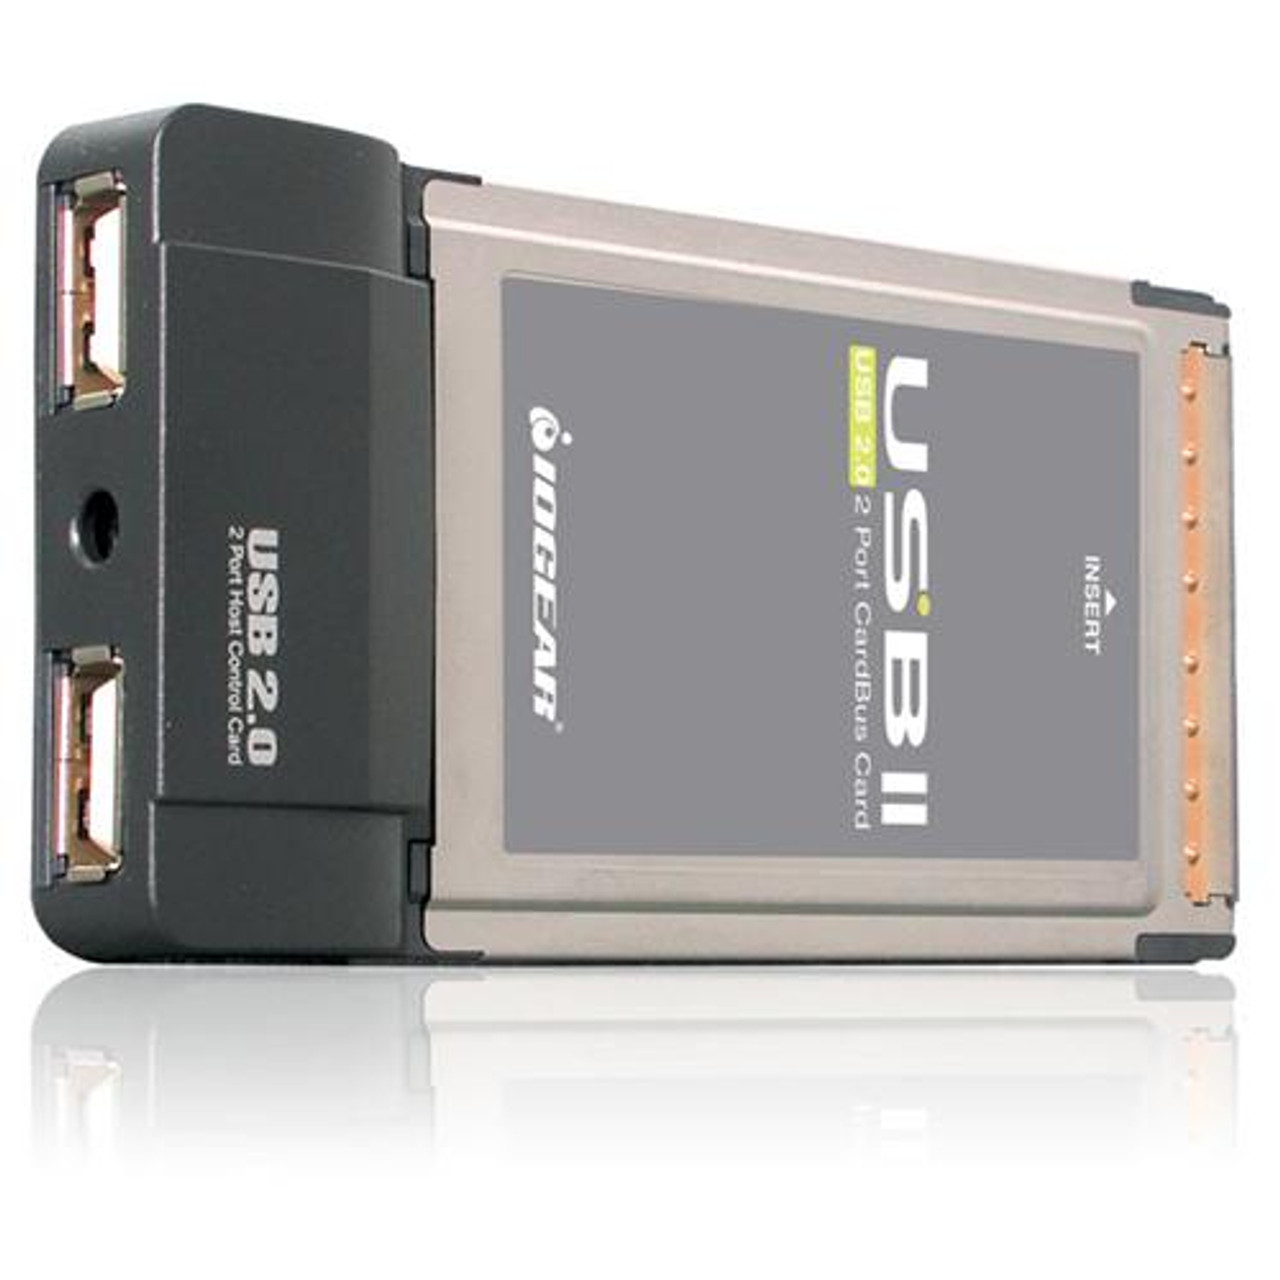 GPU202 IOGEAR GPU202 USB PCMCIA CardBus Card 2 x 4-pin Type A USB 2.0 Plug-in Module